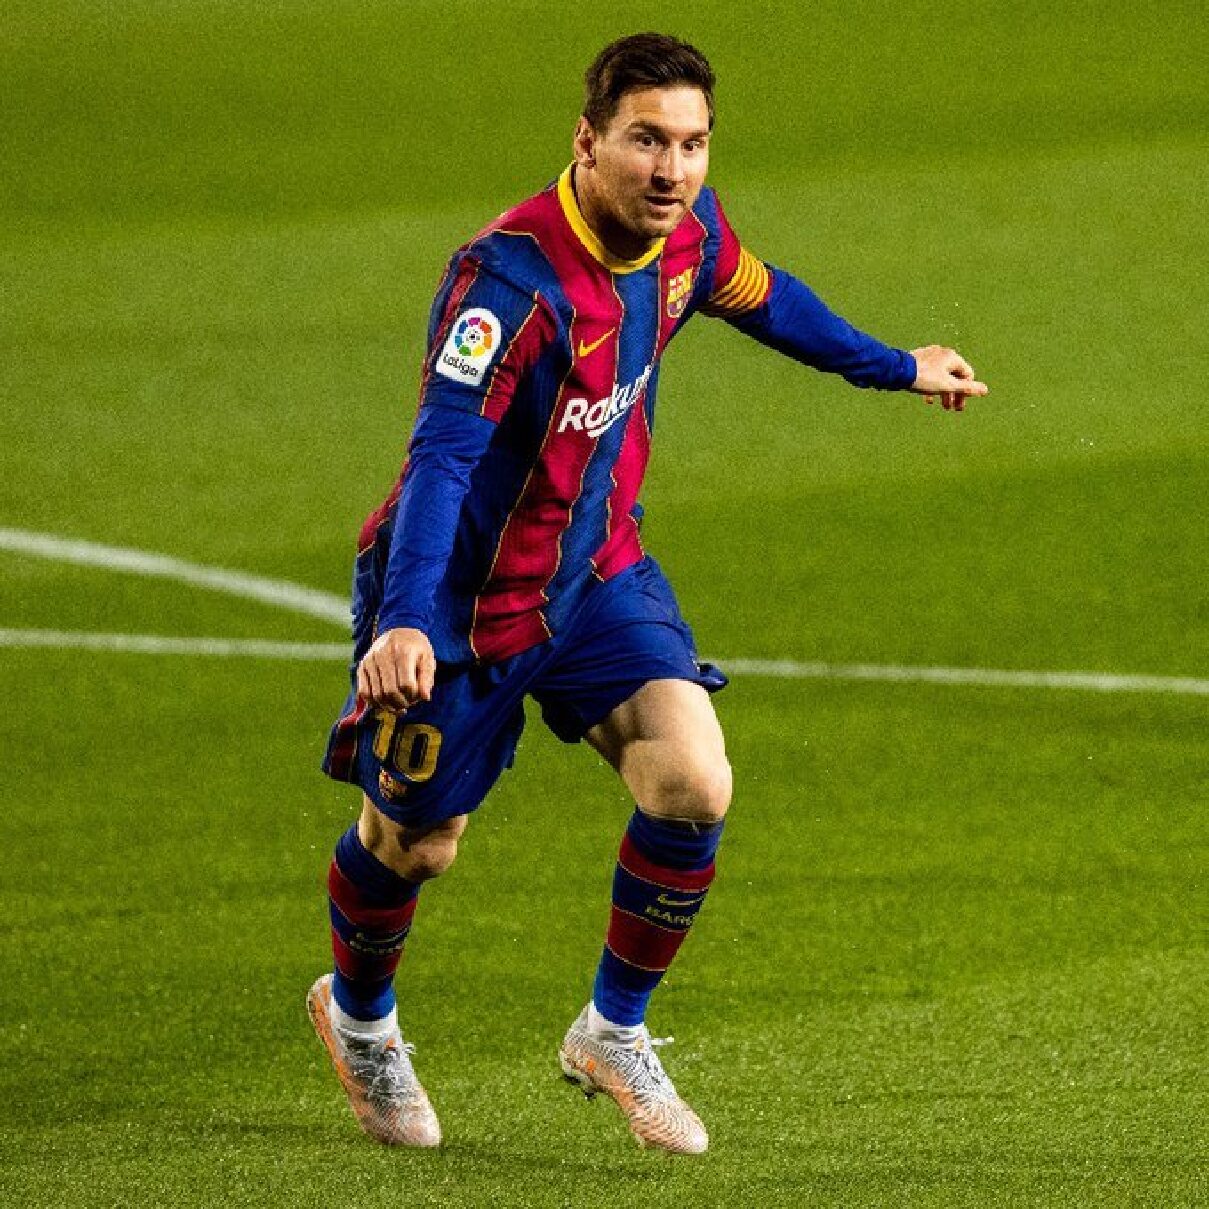  ULTIMA HORA: Messi no continua en el Barcelona, le realizan despedida y donde posiblemente jugara.